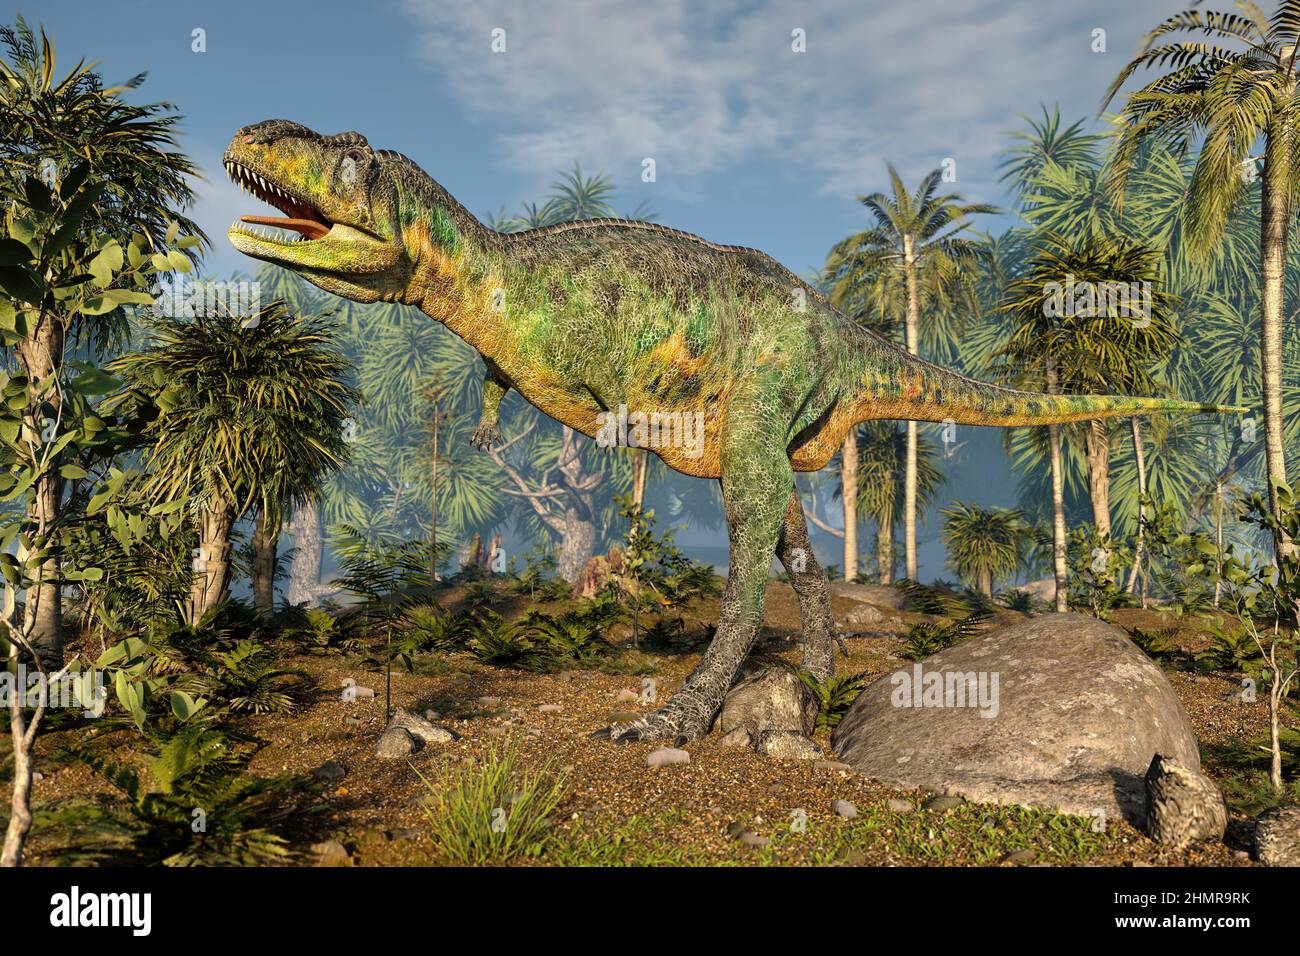 Megalosaurus dinosaur, illustration Stock Photo